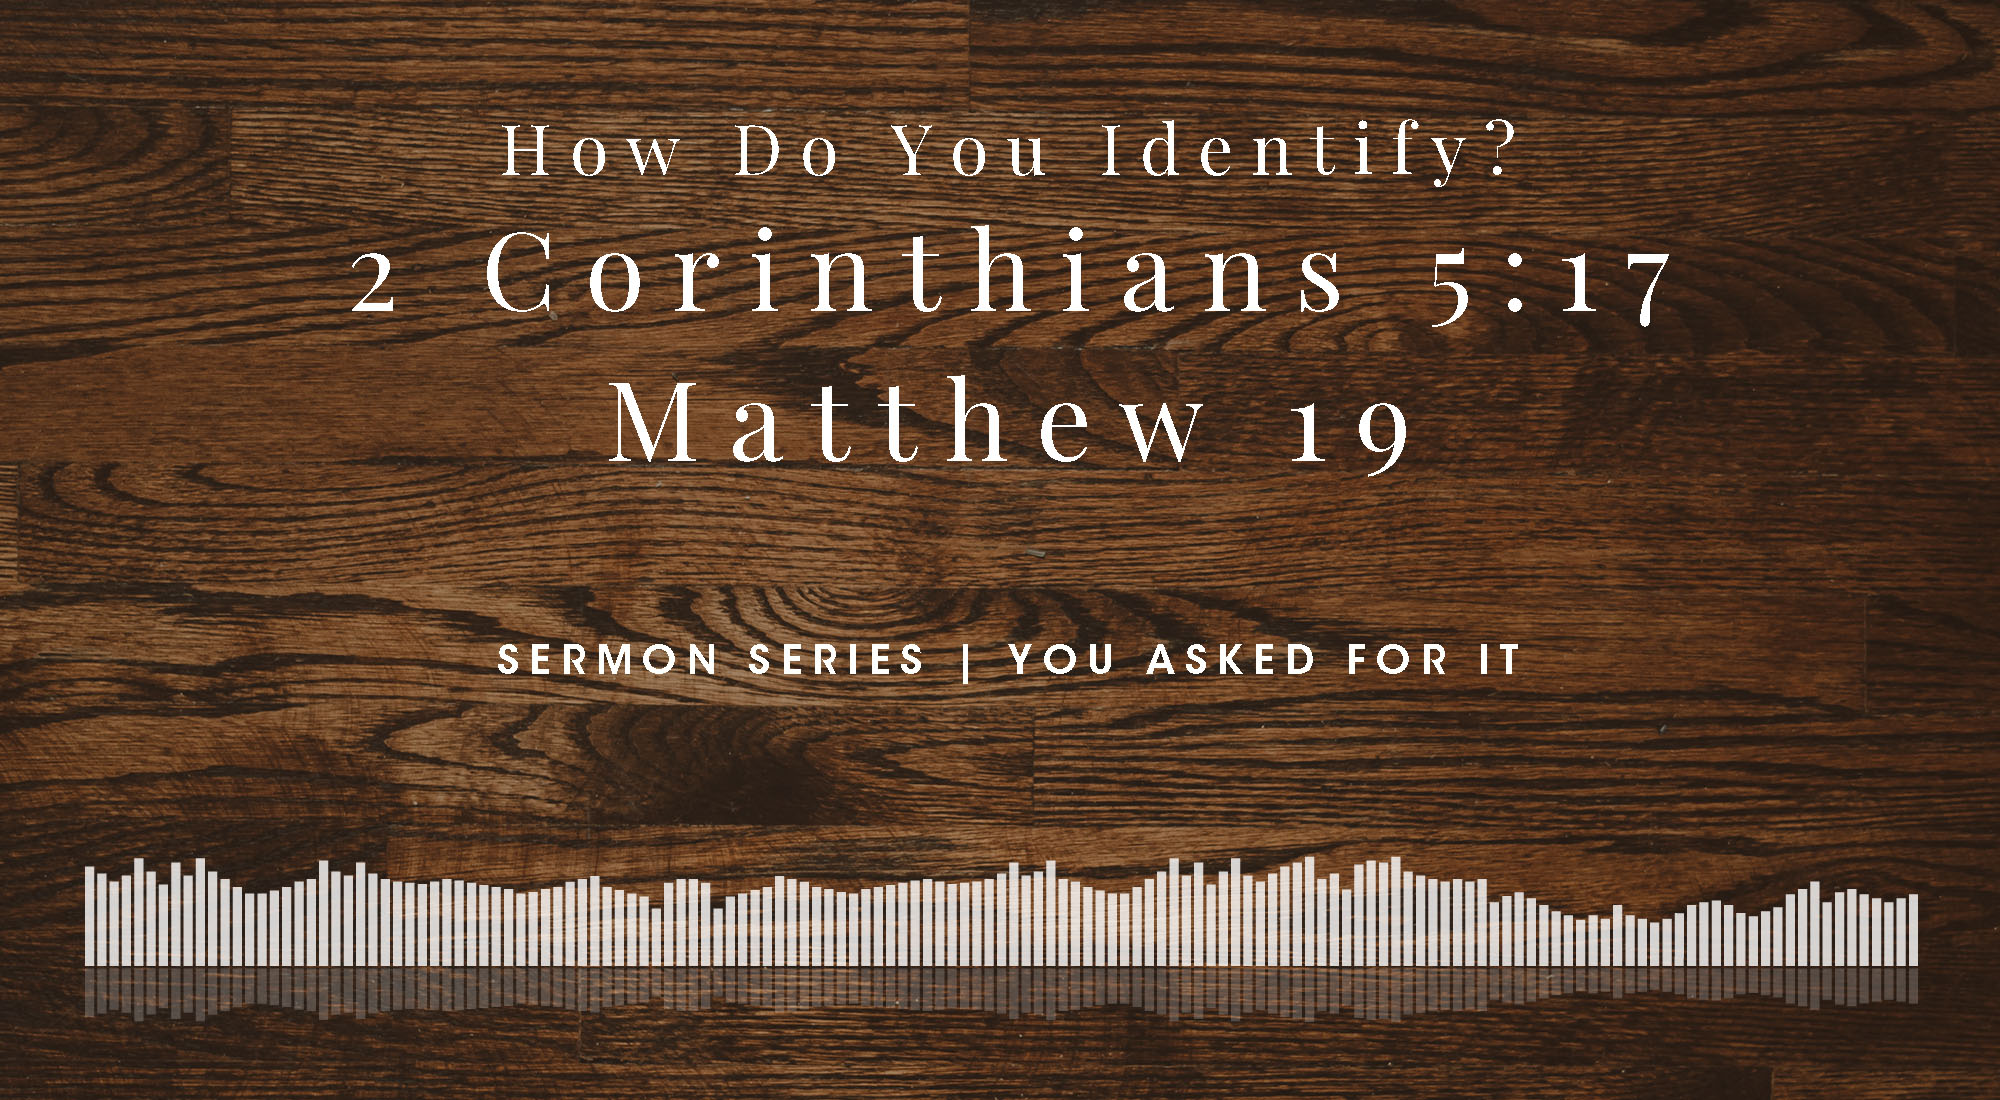 How Do You Identify? 2 Corinthians 5:17; Matthew 19